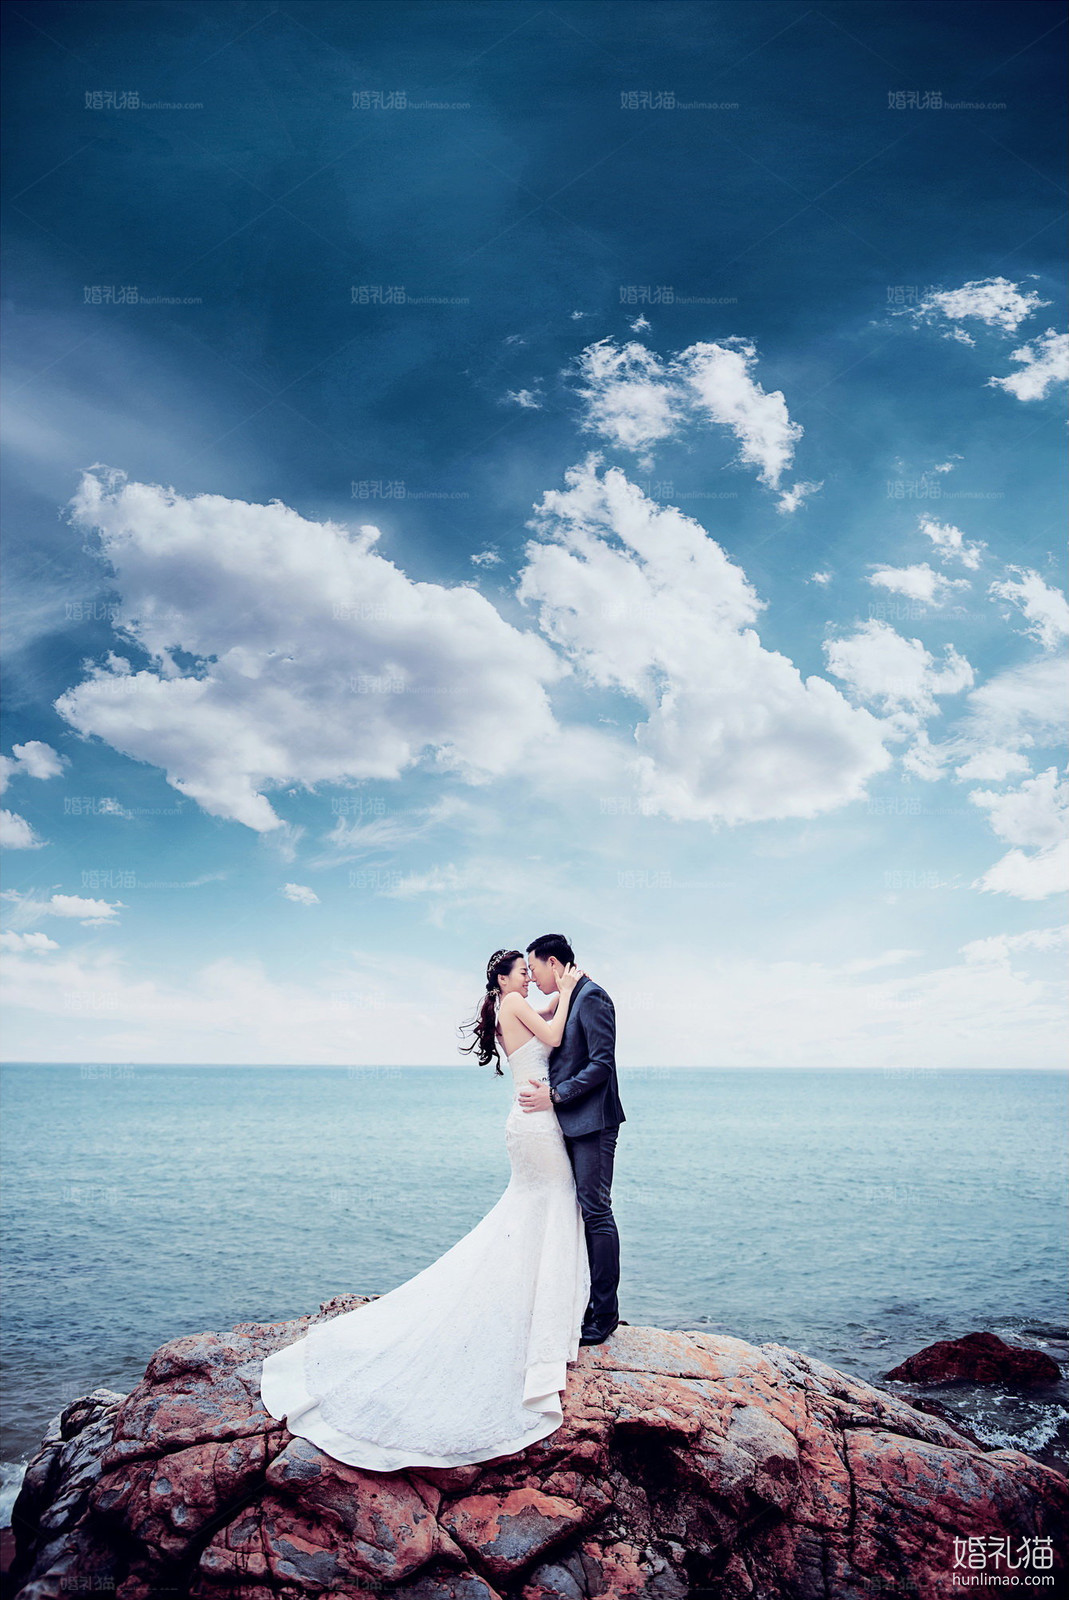 海景结婚照,[海景, 礁石],佛山婚纱照,婚纱照图片